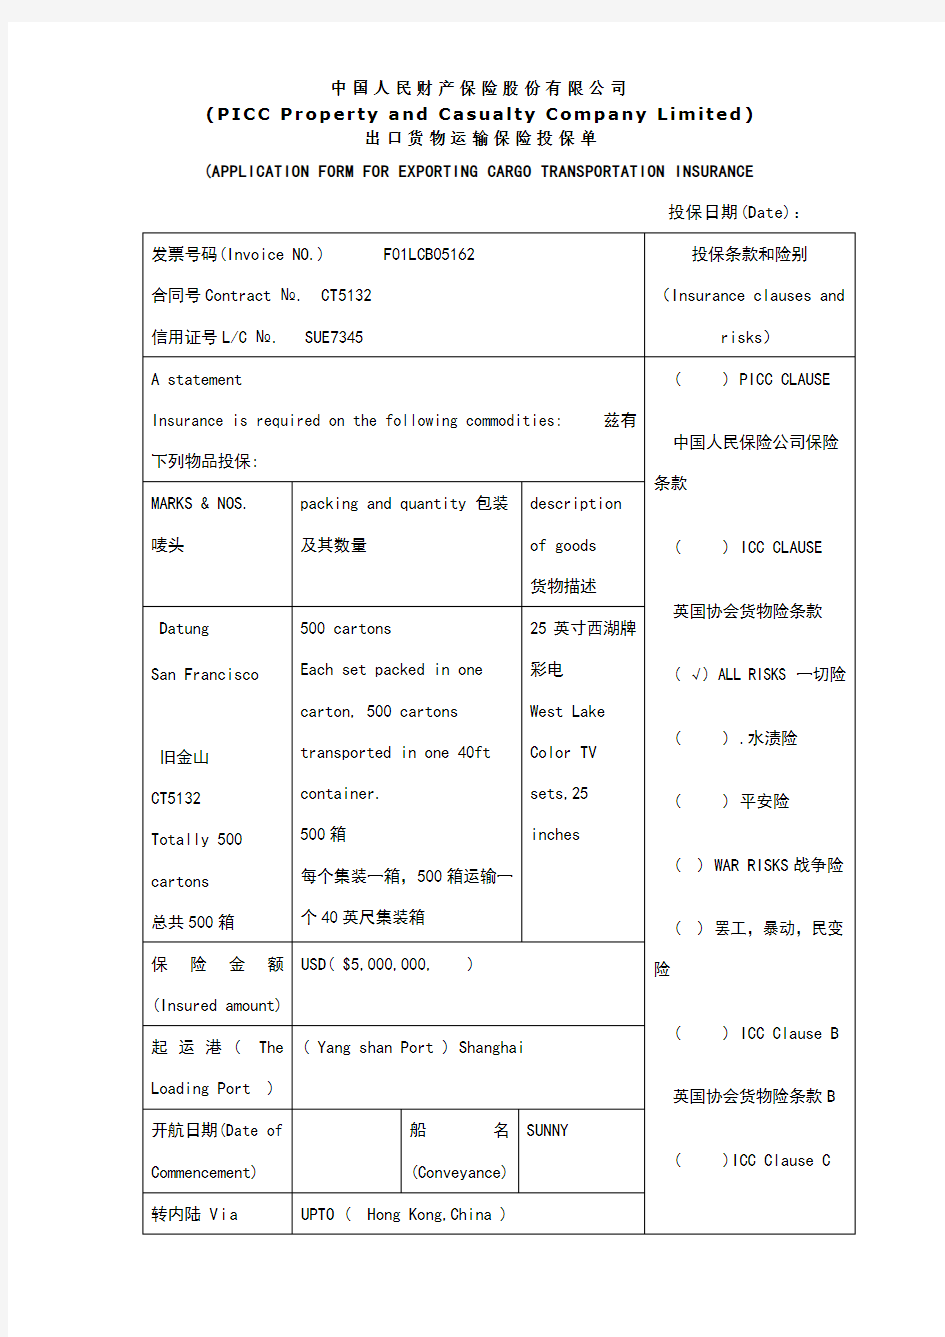 出口货物运输保险投保单(中英文)